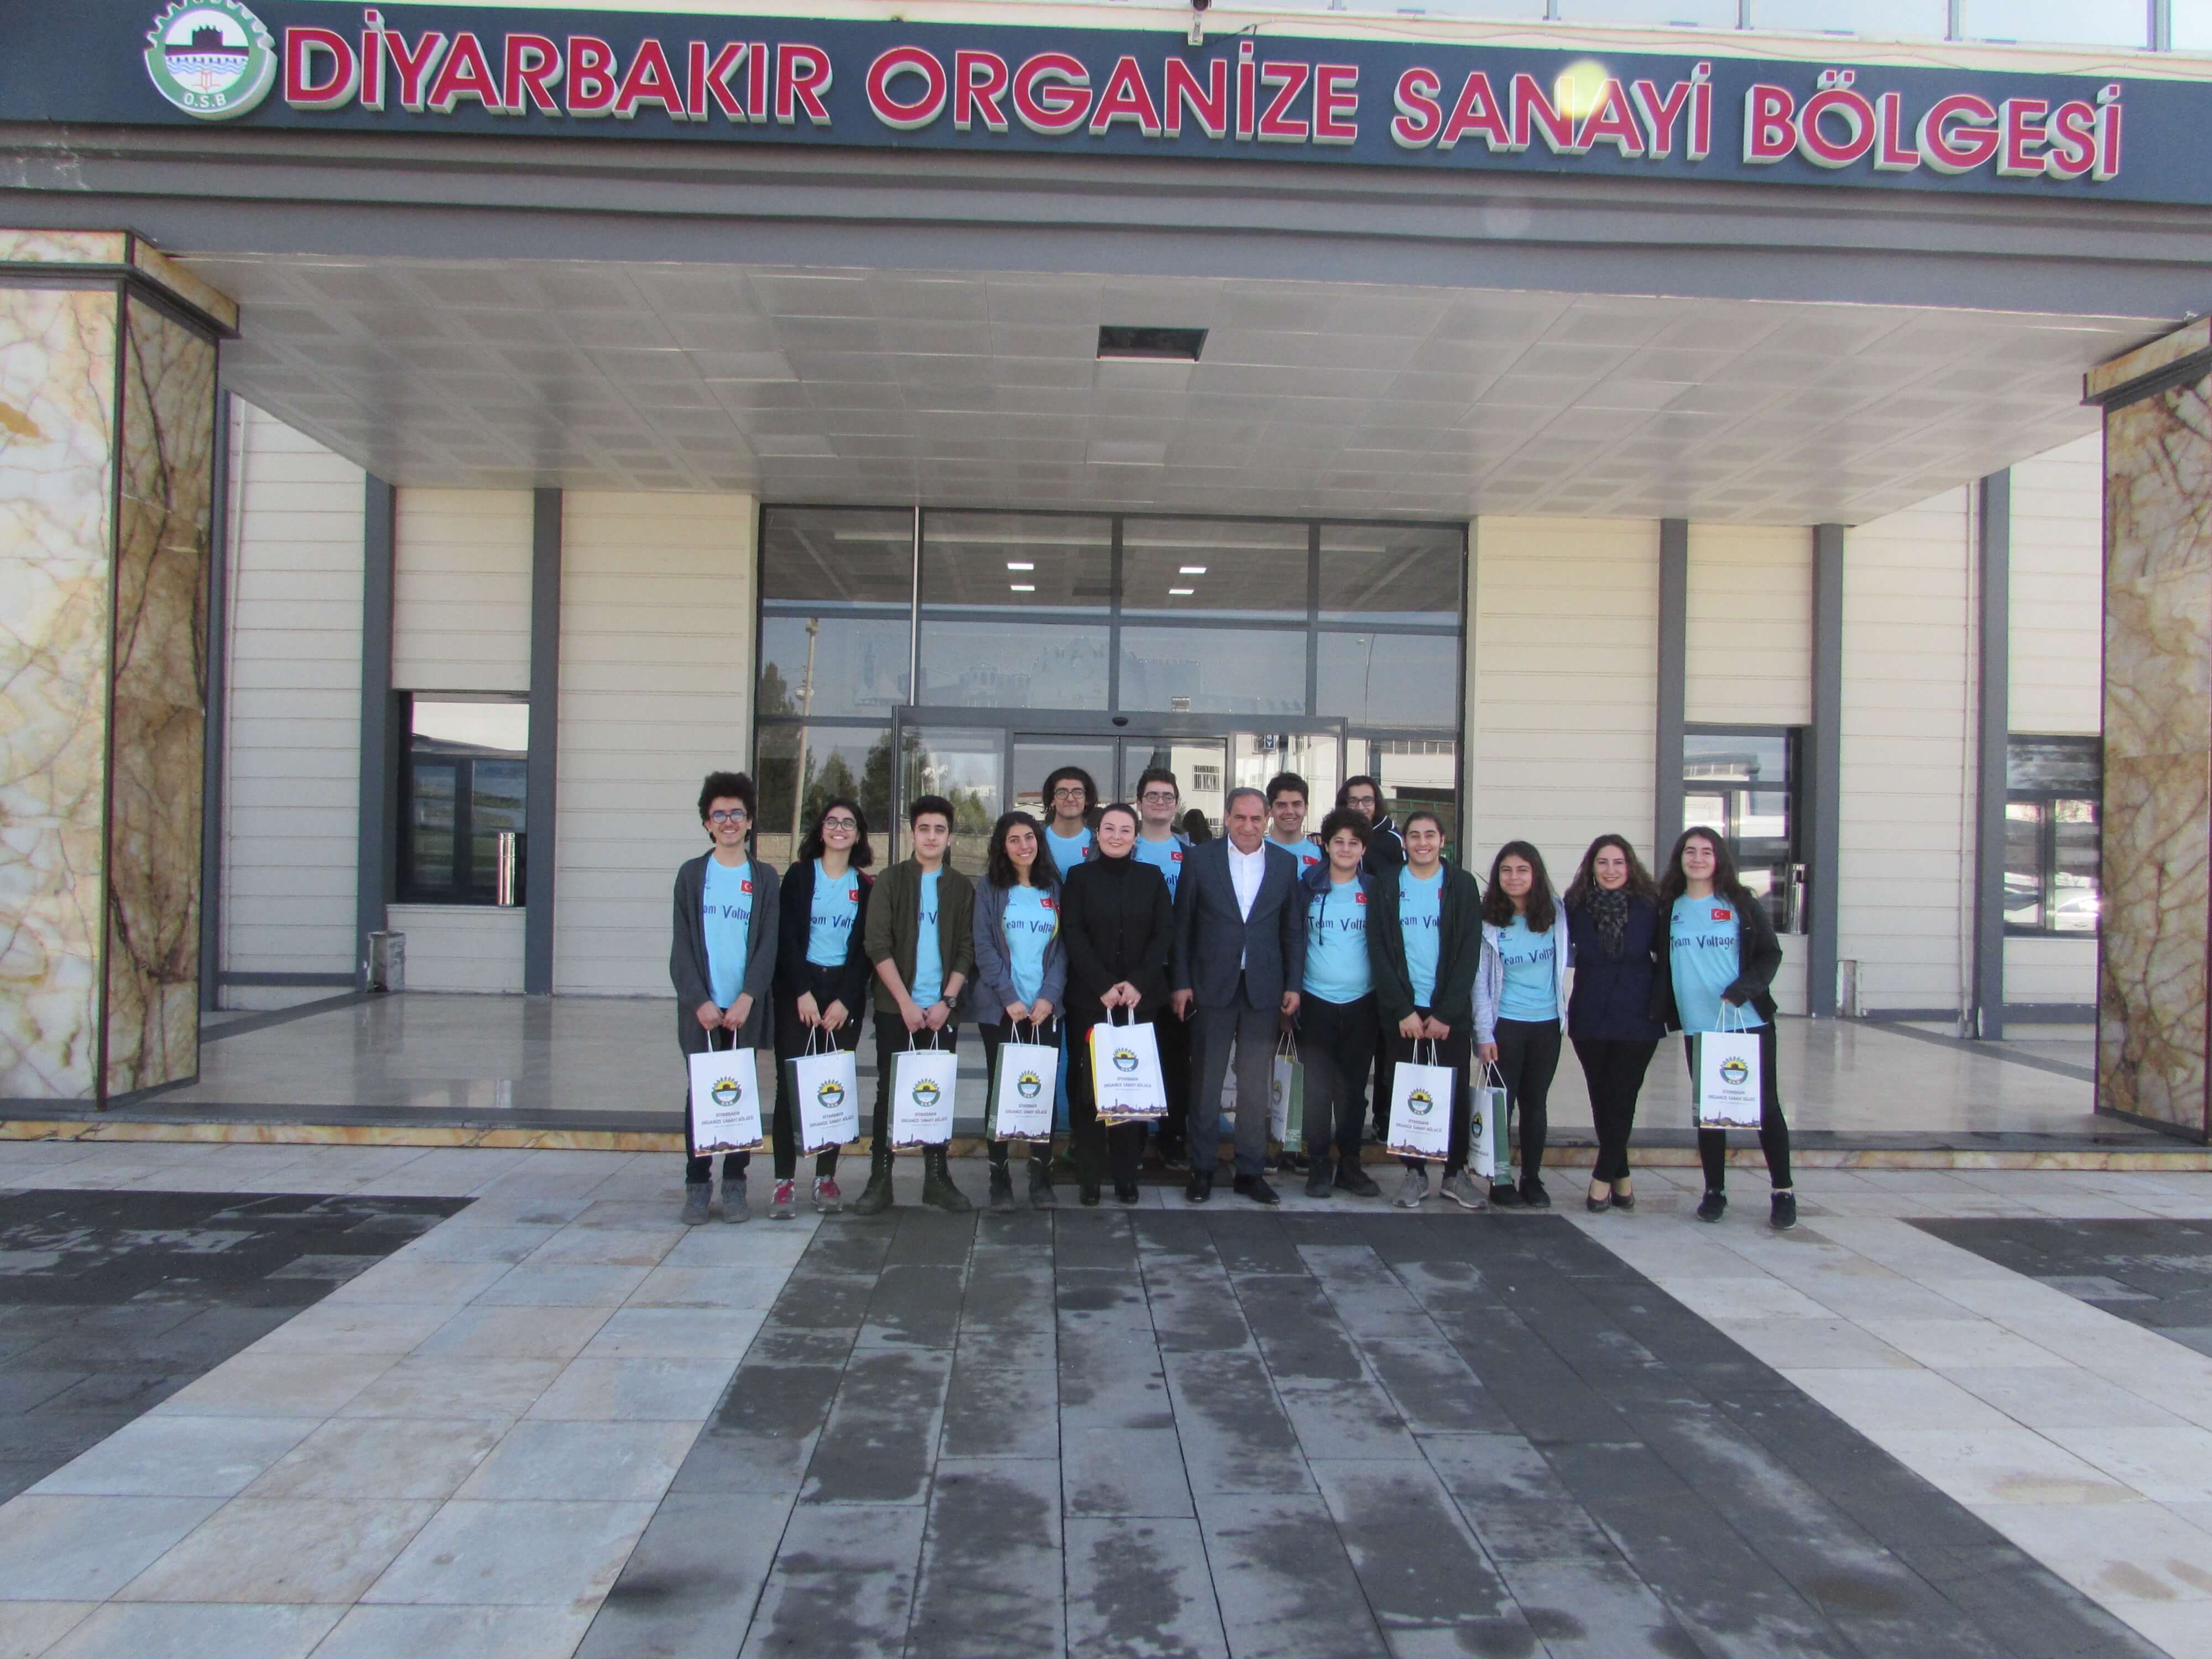 Uluslararası First Lego League Bölgesel Turnuvasında Şampiyon Olan Öğrencilerimiz den Diyarbakır OSB Yönetimine ziyaret.